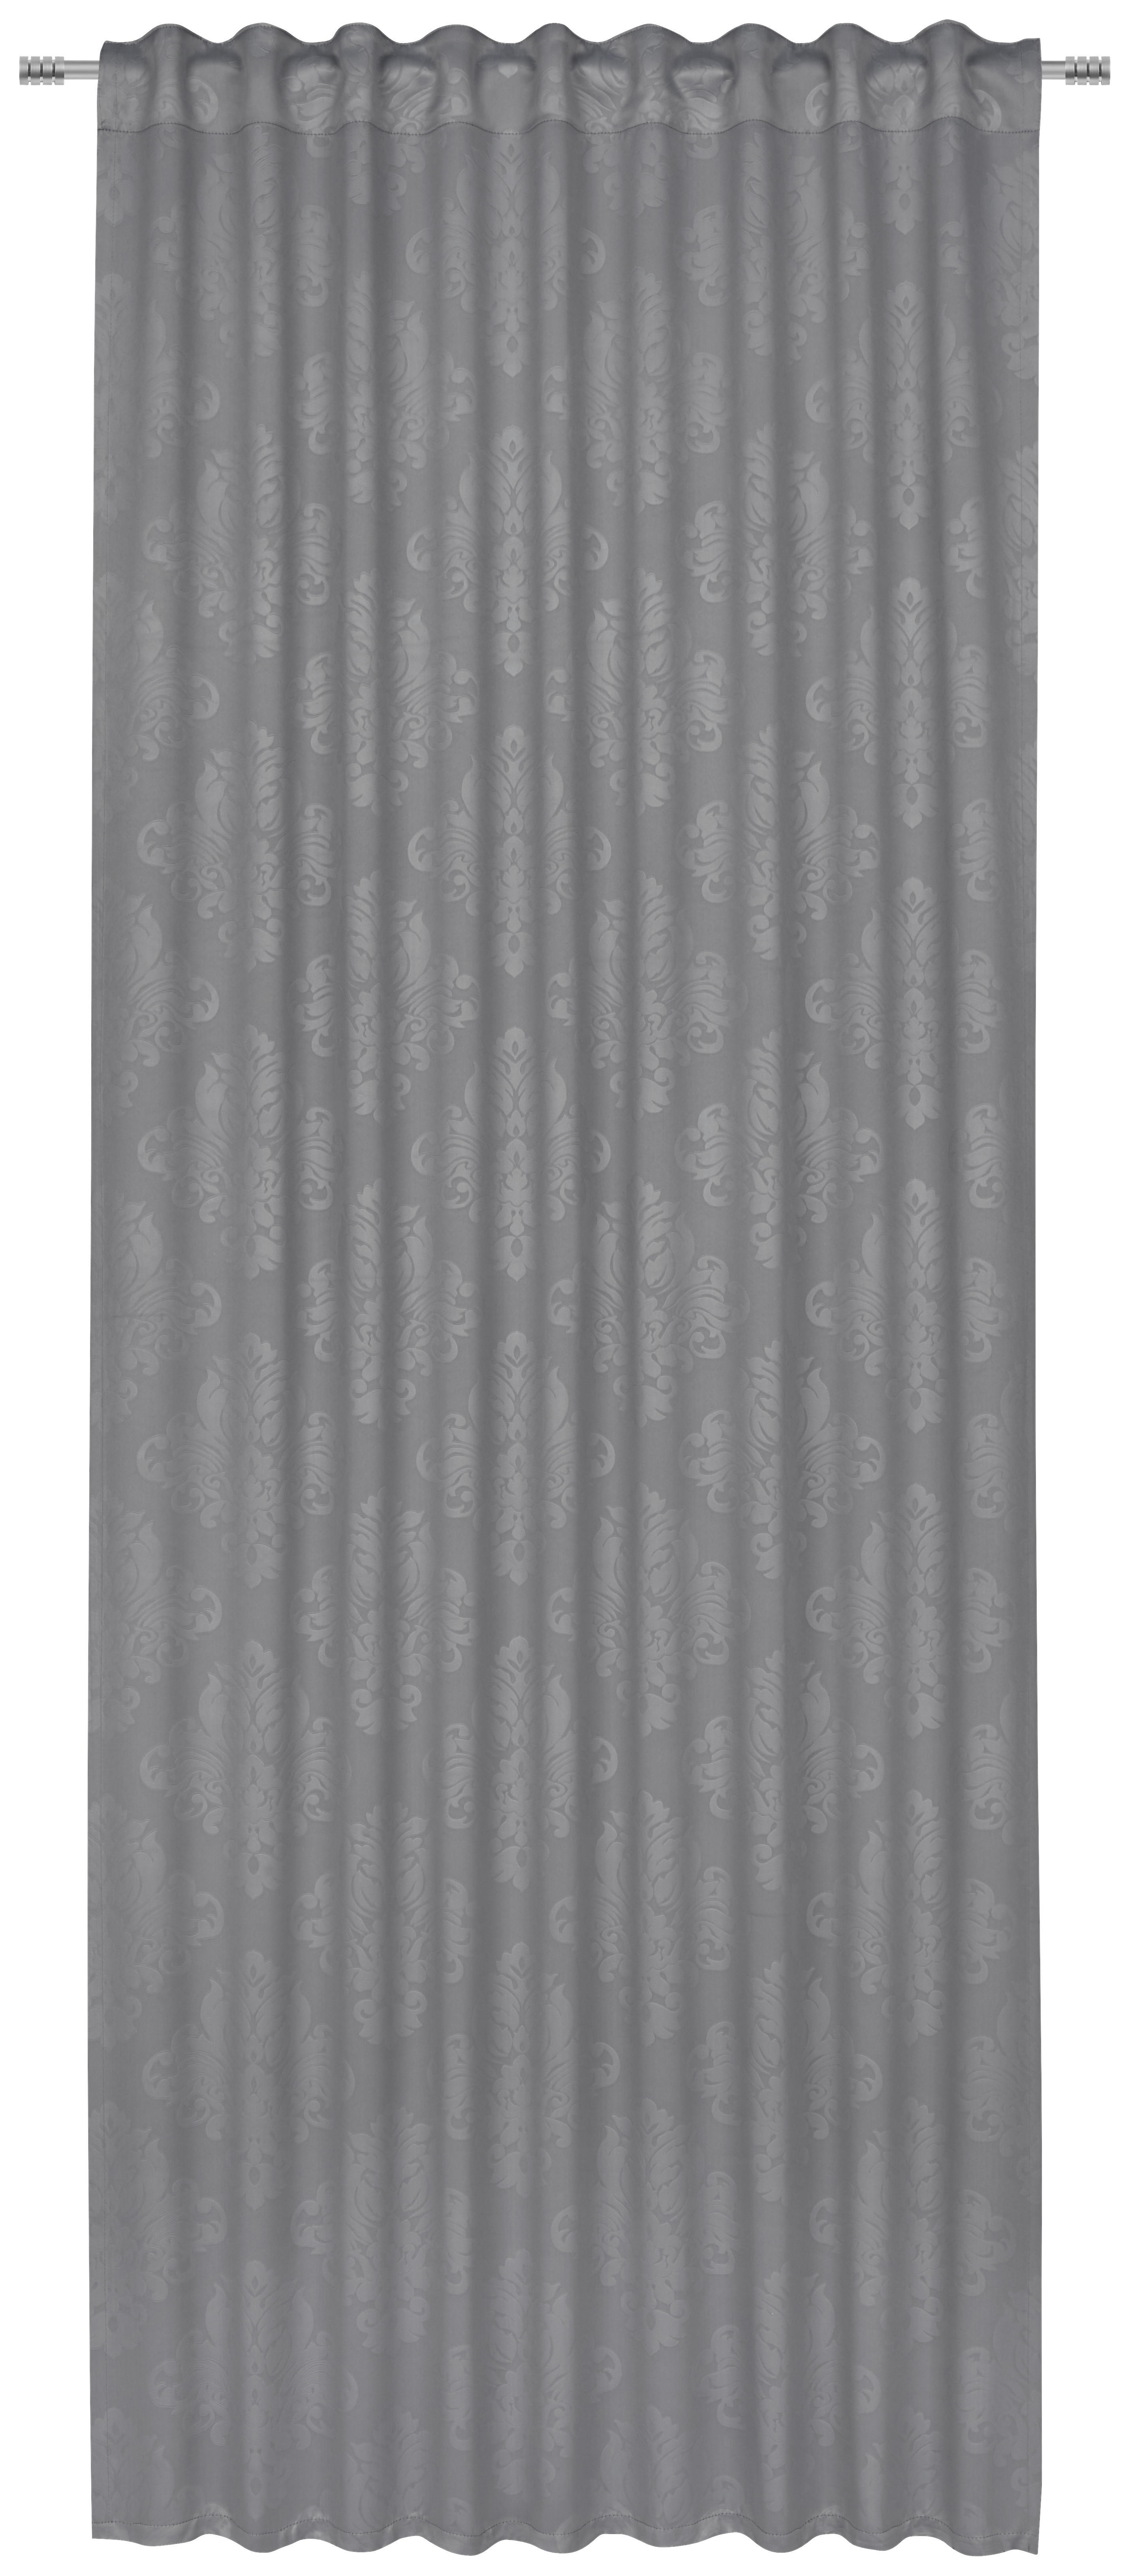 FERTIGVORHANG black-out (lichtundurchlässig) 135/245 cm   - Grau, KONVENTIONELL, Textil (135/245cm) - Boxxx